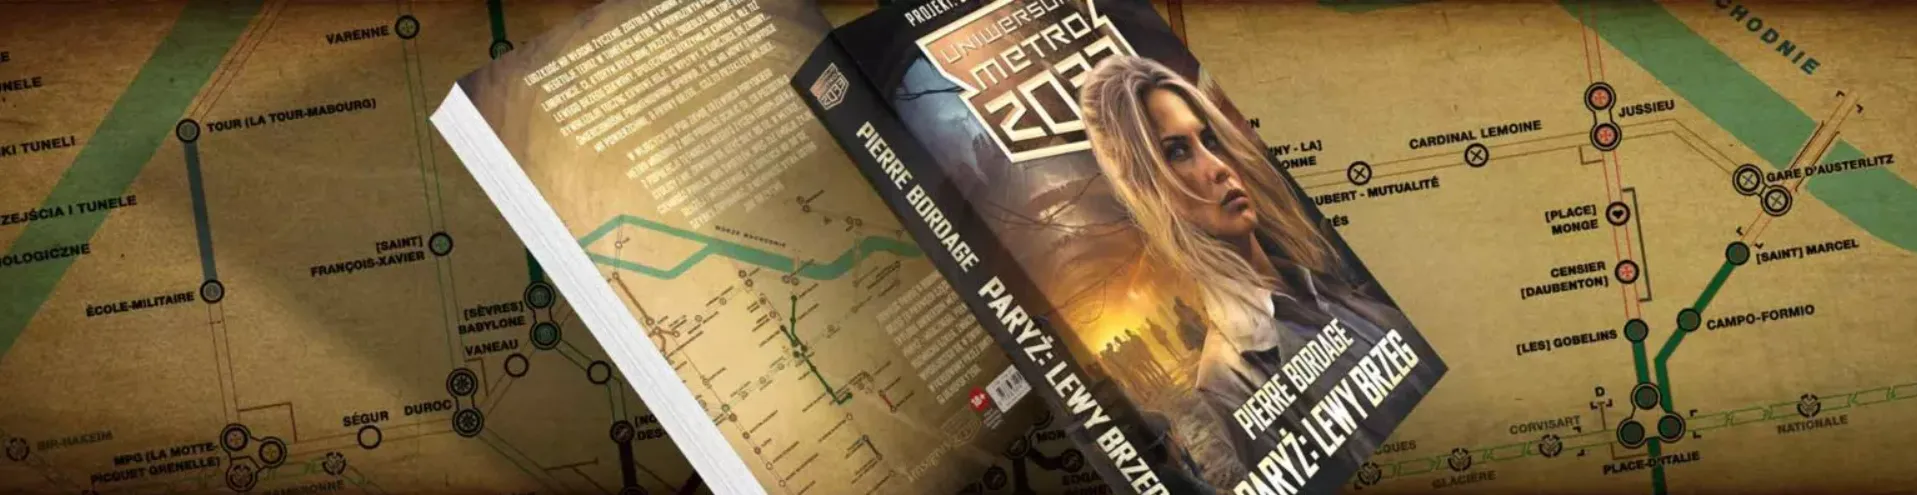 Metro 2033 powraca! Tym razem w mrocznym Paryżu